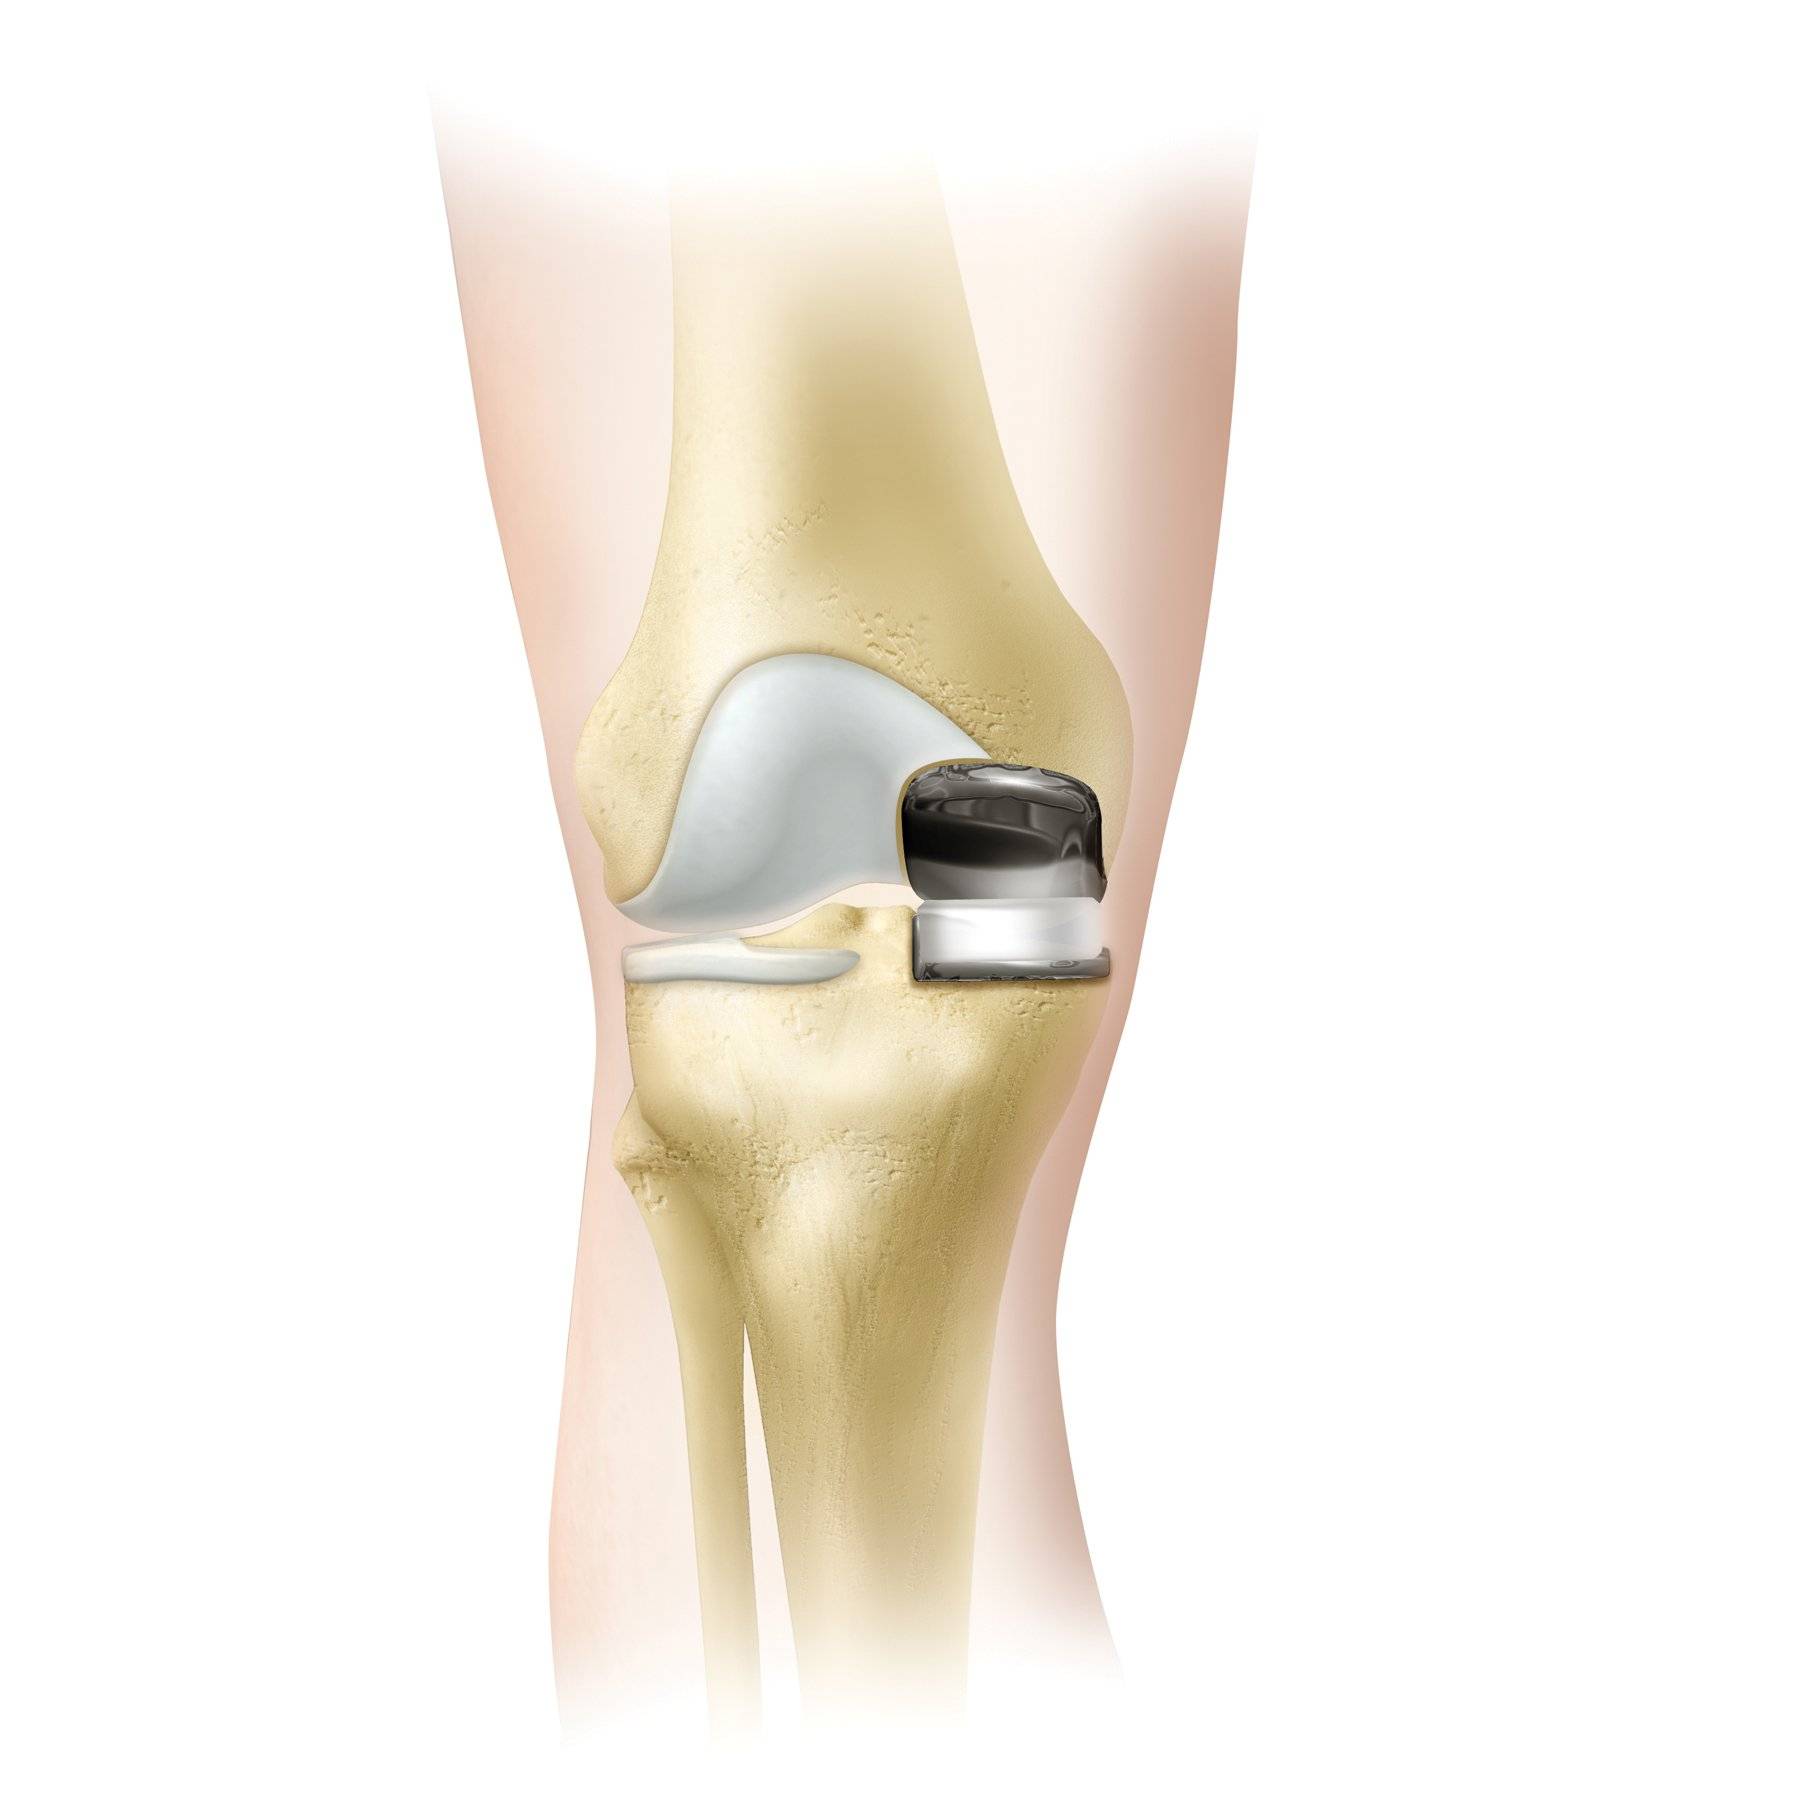 Эндопротезирование коленного сустава клиника. Коленный эндопротез Зиммер. Эндопротез коленного сустава. Эндопротез Зиммер коленного сустава. Артропластика коленного сустава.